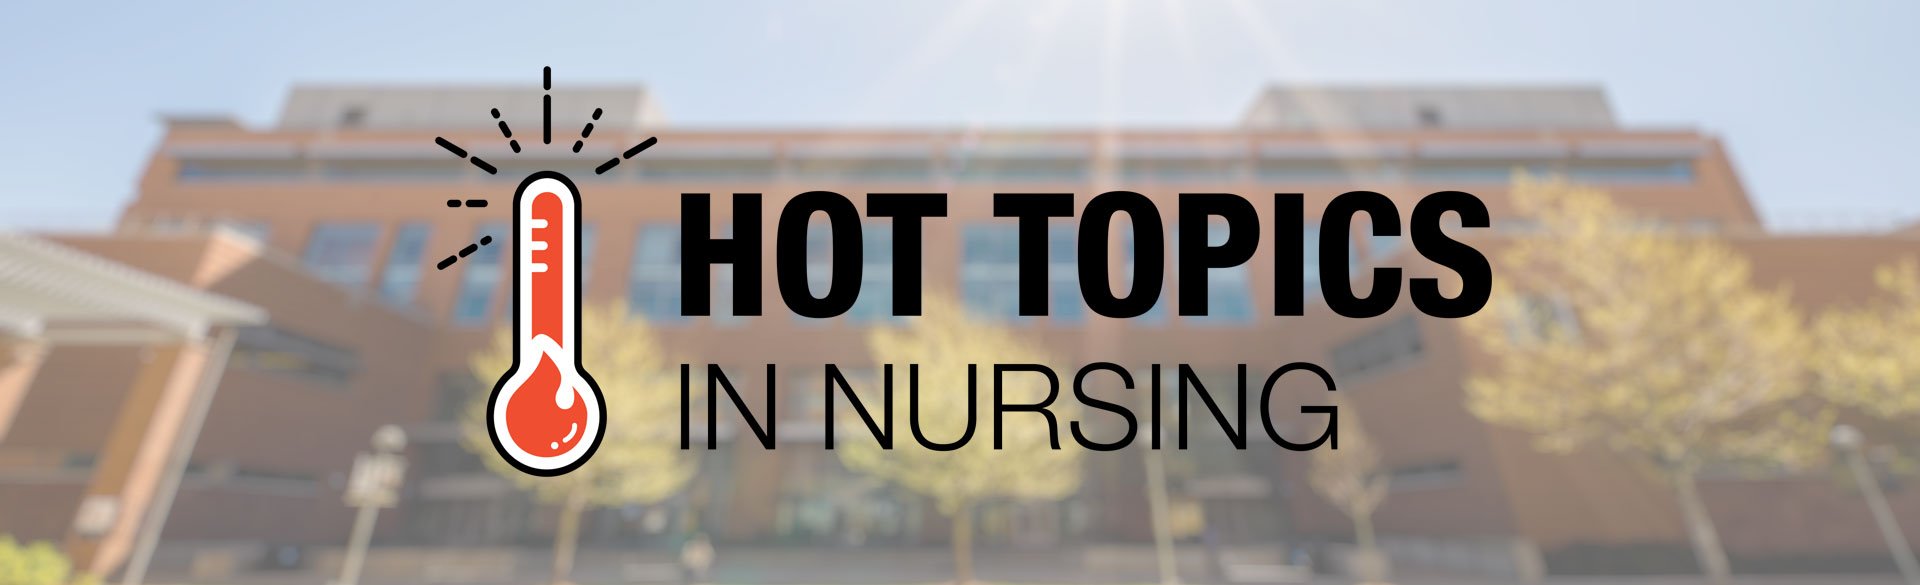 Hot Topics in Nursing: Peer-to-Peer Wisdom